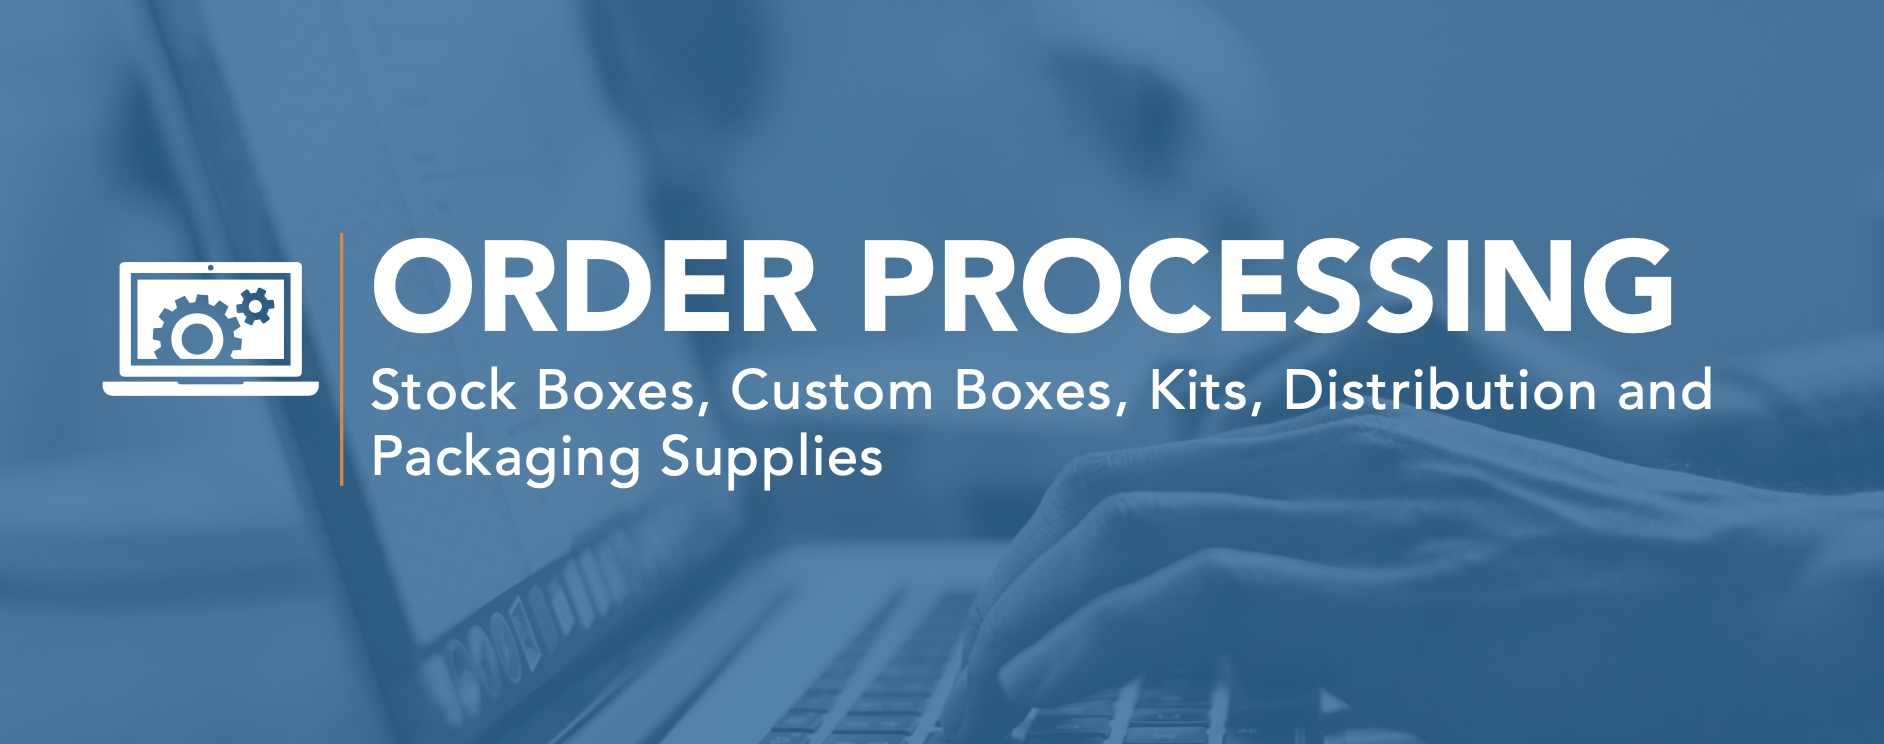 Order Processing Data Sheet